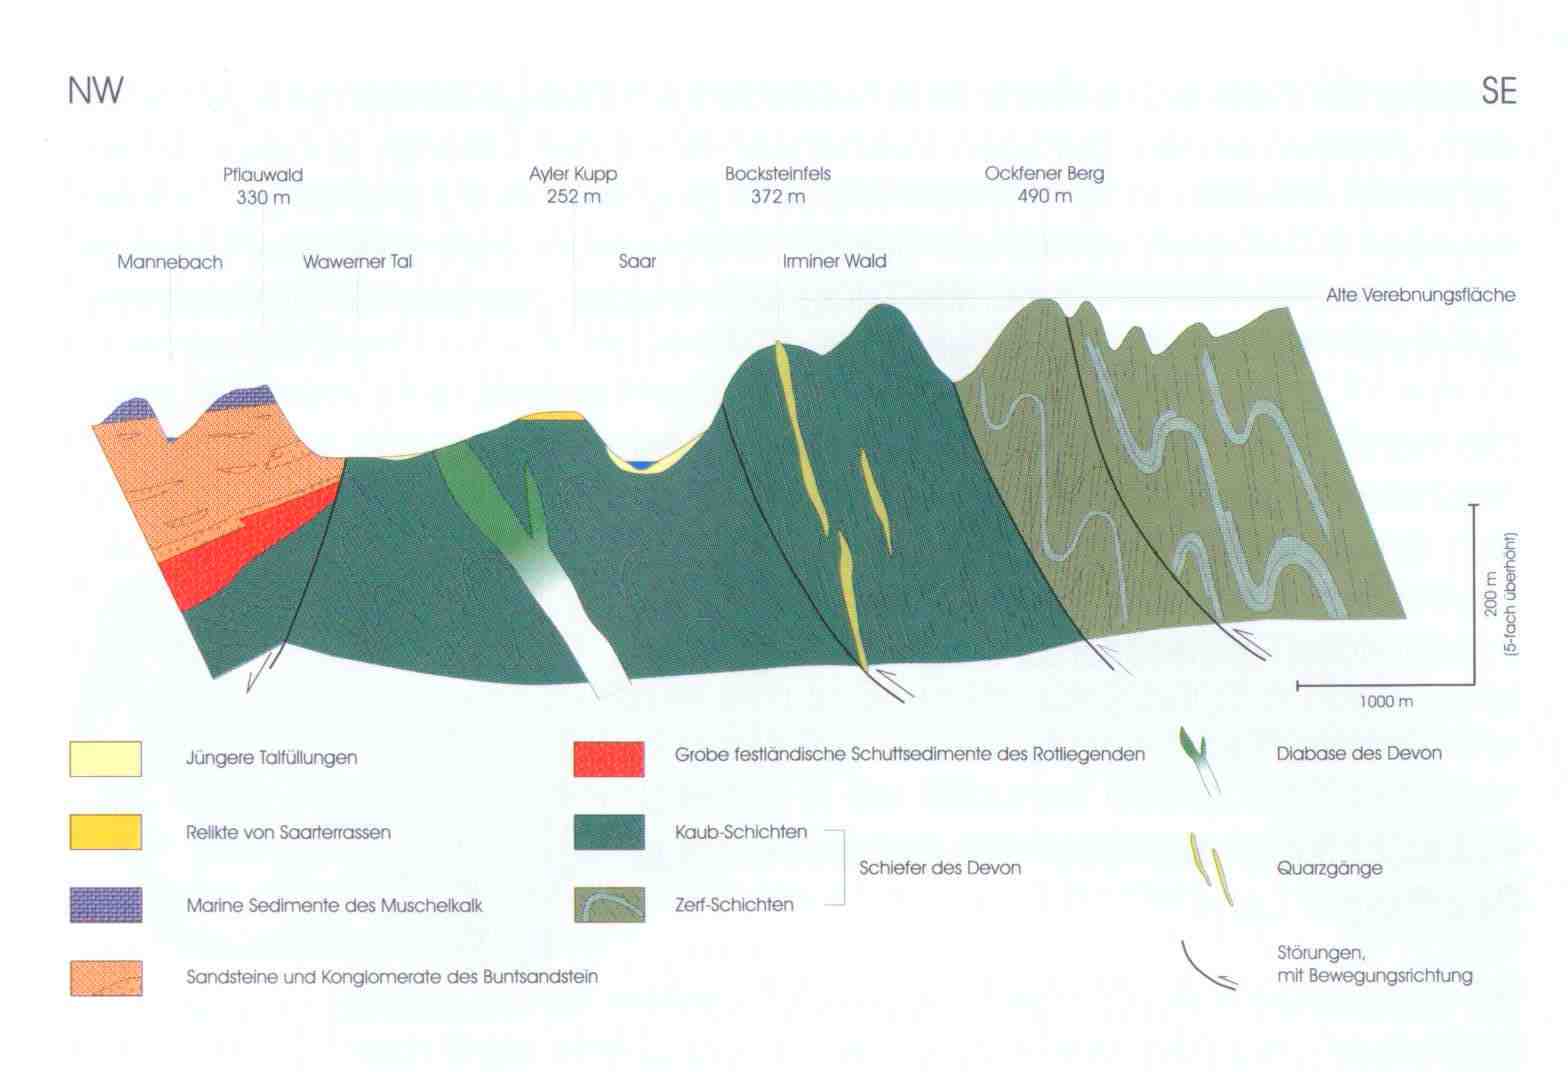 geologisches Profil, Schnitt Mannebach über Ockfen bis Zerf